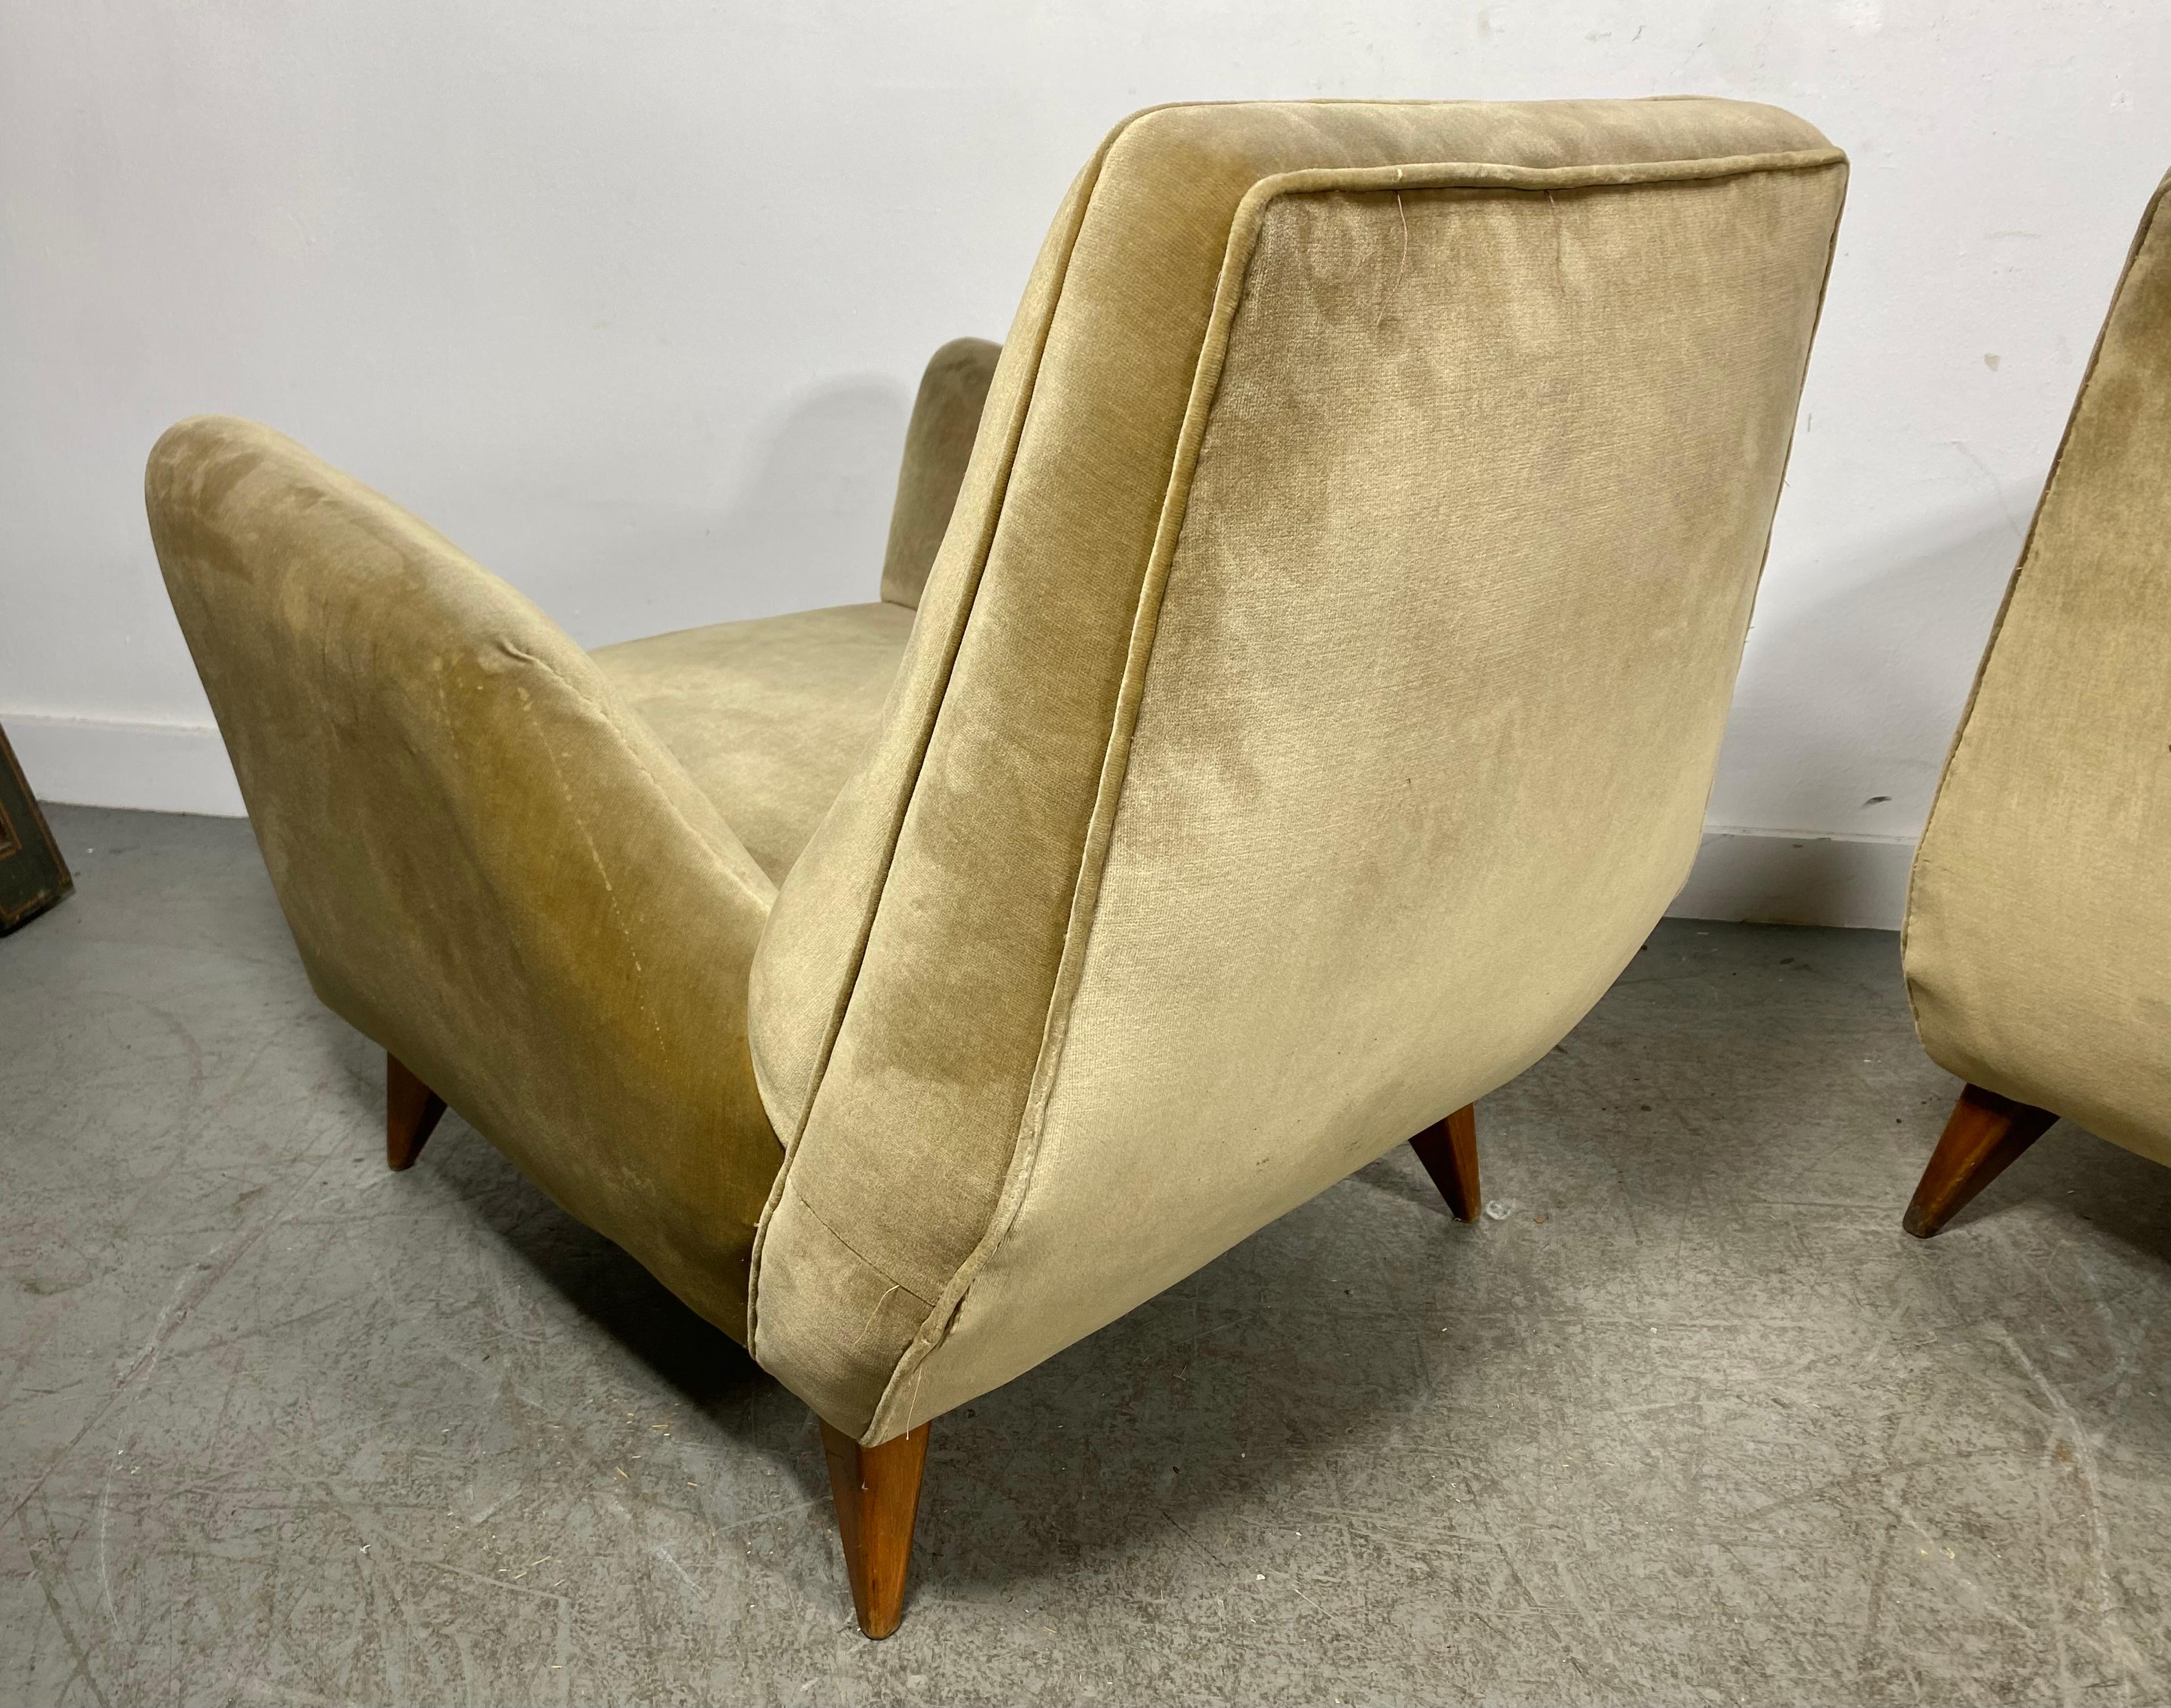 Fabric Stunning Pair Italian Modernist Lounge Chairs by Isa Bergamo & Att Gio Ponti